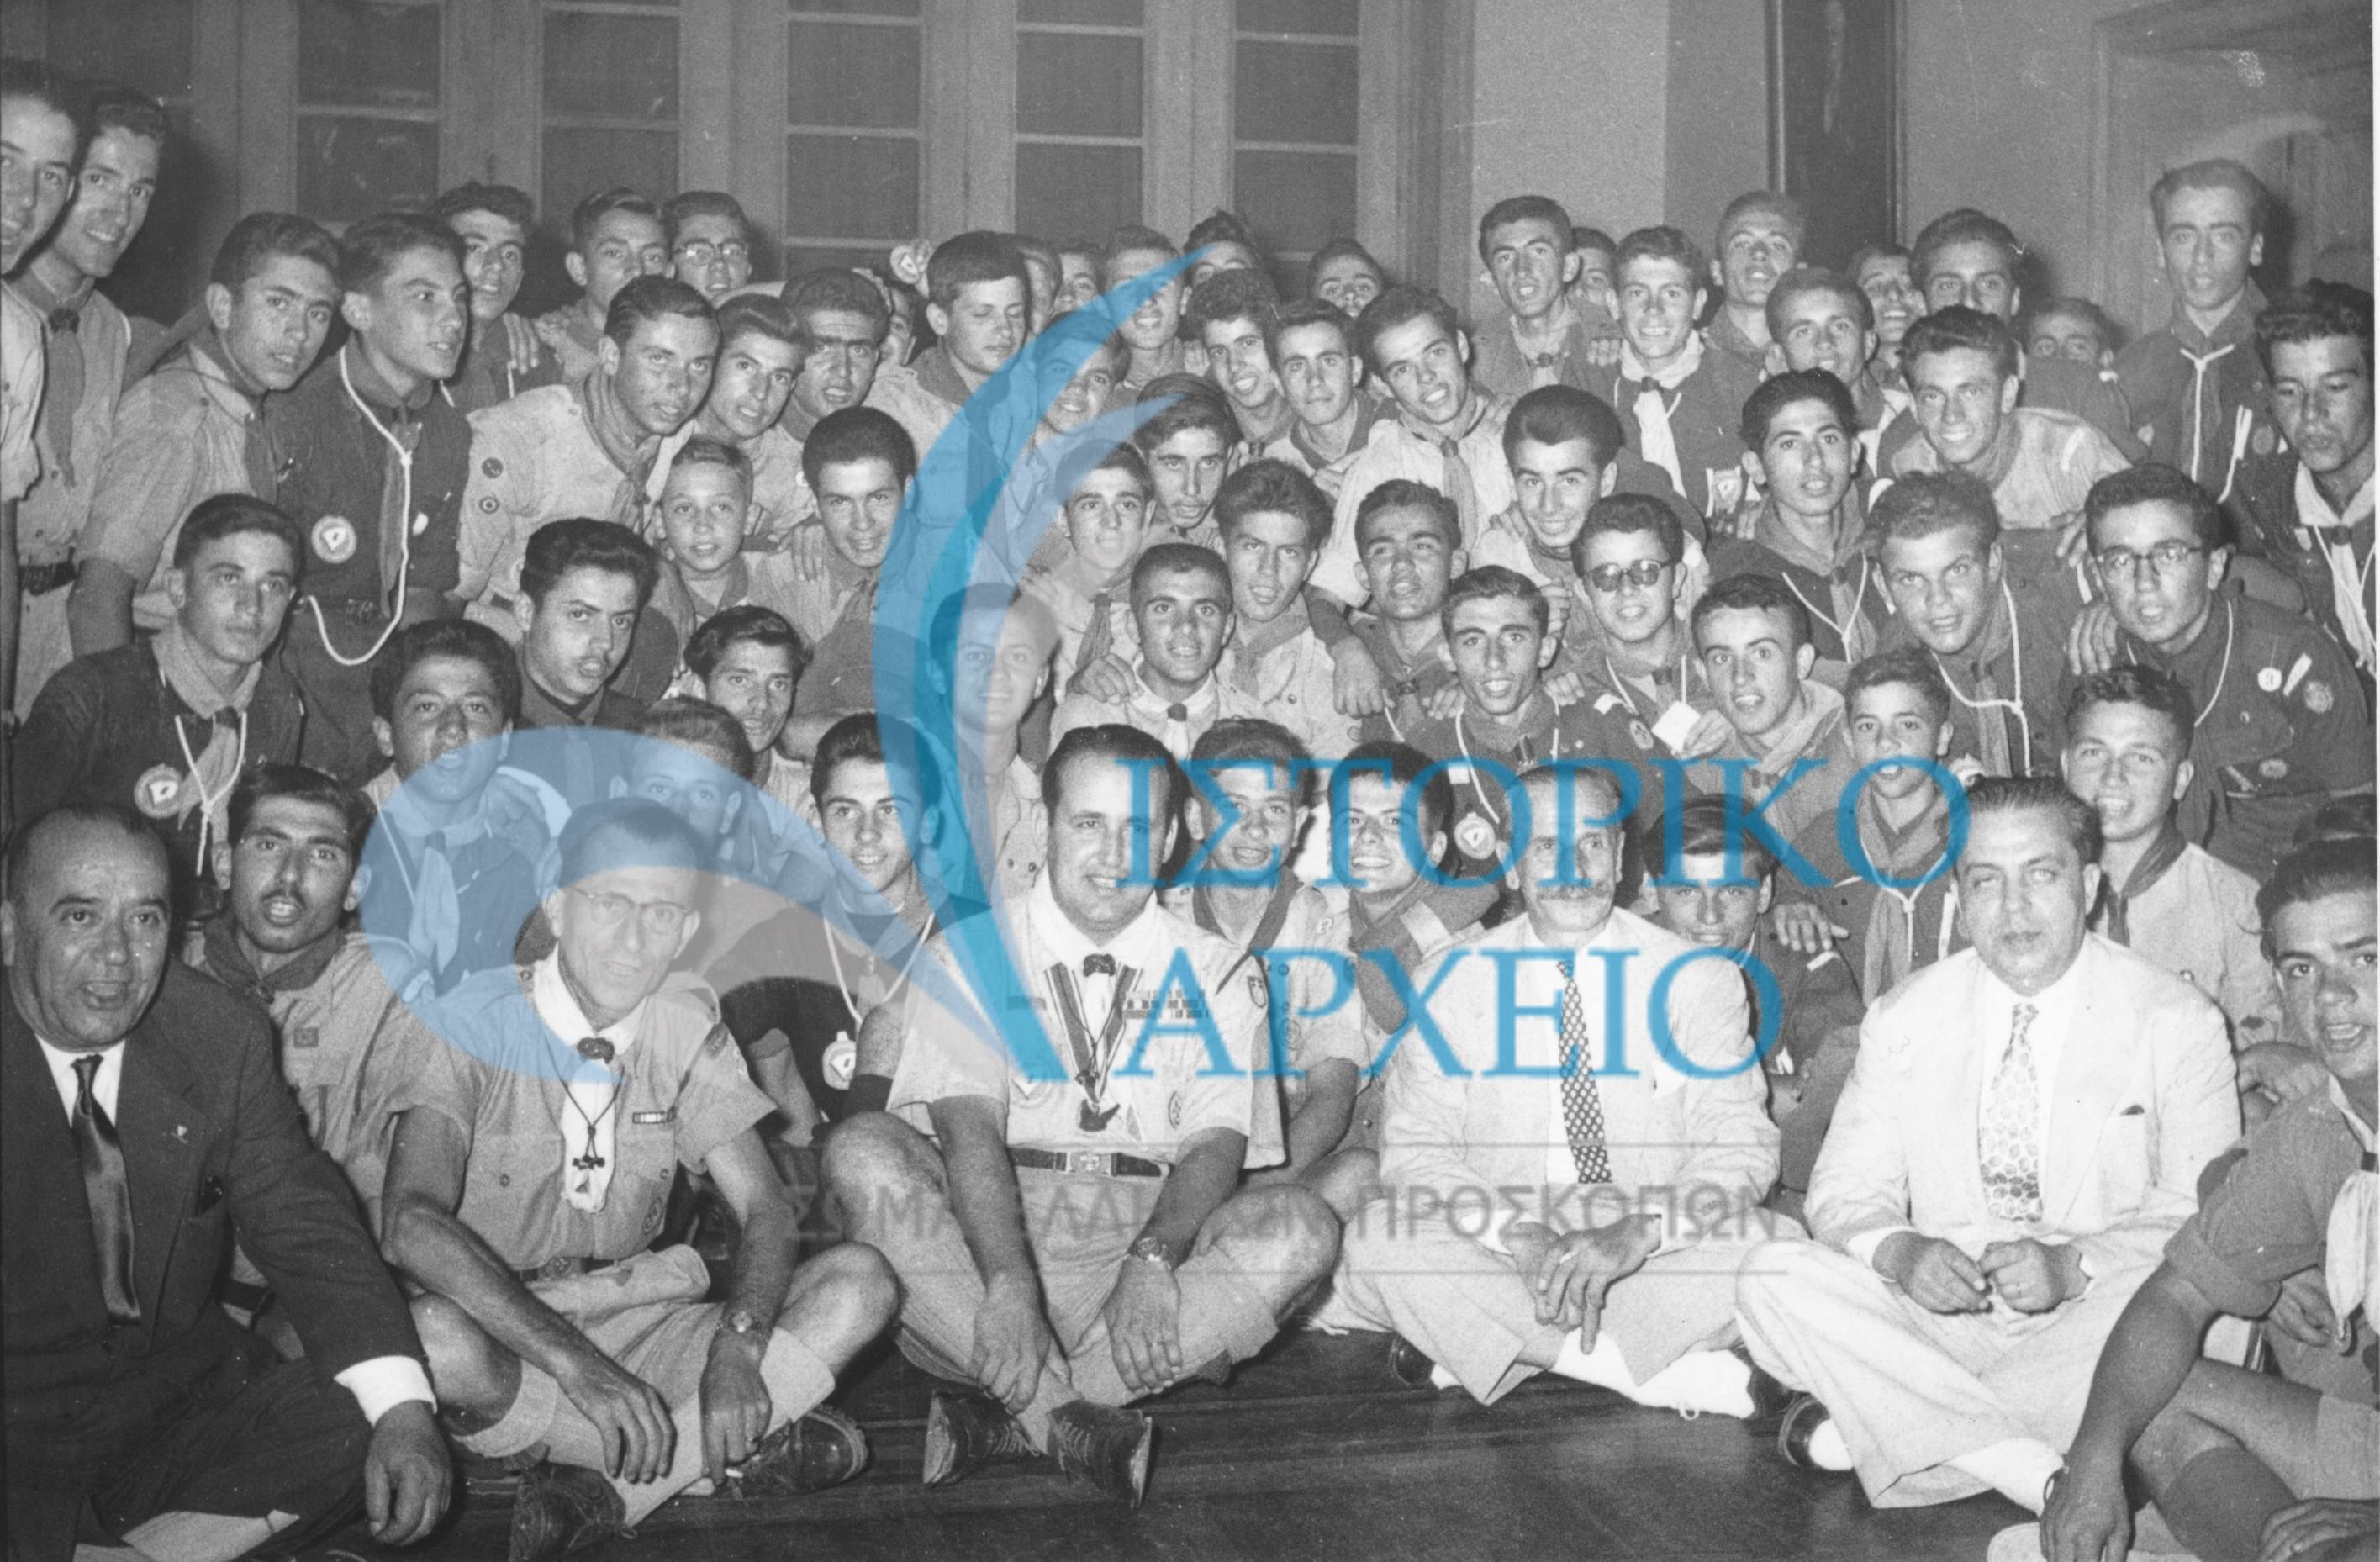 Τα μέλη της 1ης Πανελλήνιας Κατασκήνωση Ενωμοταρχών με τον ΓΕ Δημ. Αλεξάτο στο Δημαρχείο Αθηνών το 1954. Στα δεξιά καθισμένος ο Δήμαρχος Αθηναίων Κωνσταντίνος Νικολόπουλος.